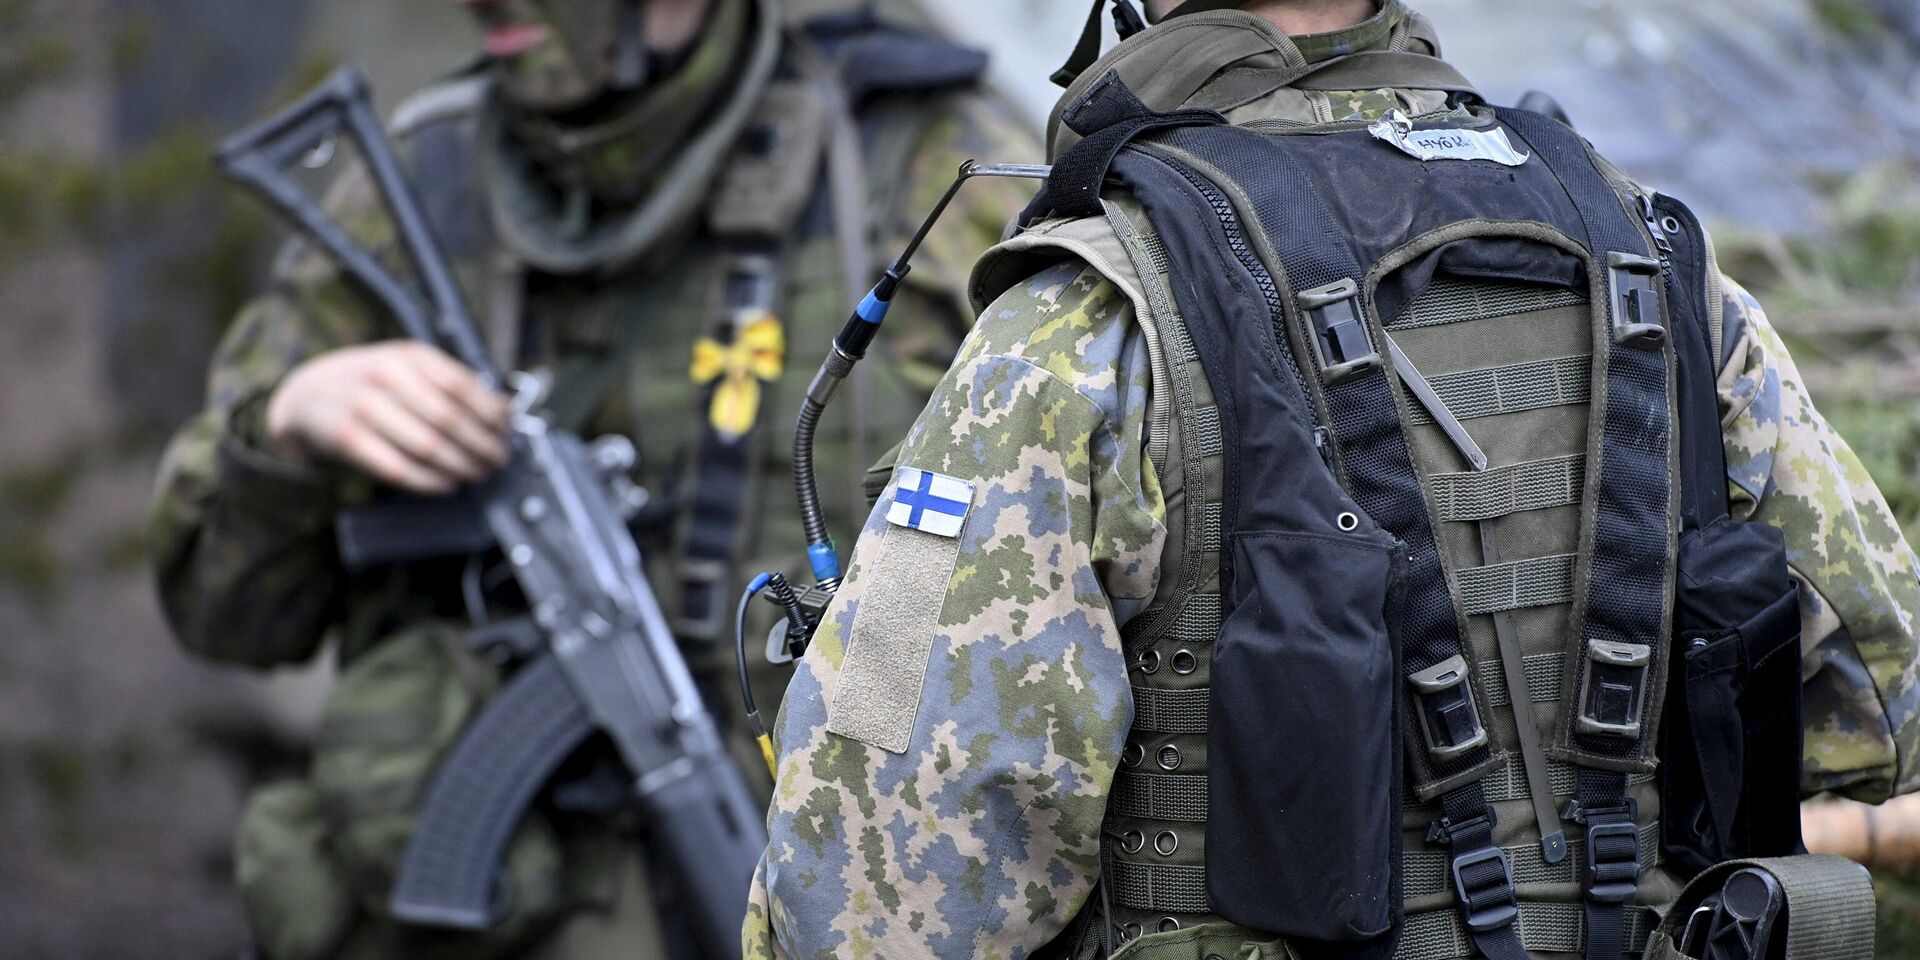 Финские солдаты во время военных учений в Канкаанпгге, Финляндия. 4 мая 2022 года - ИноСМИ, 1920, 11.10.2022